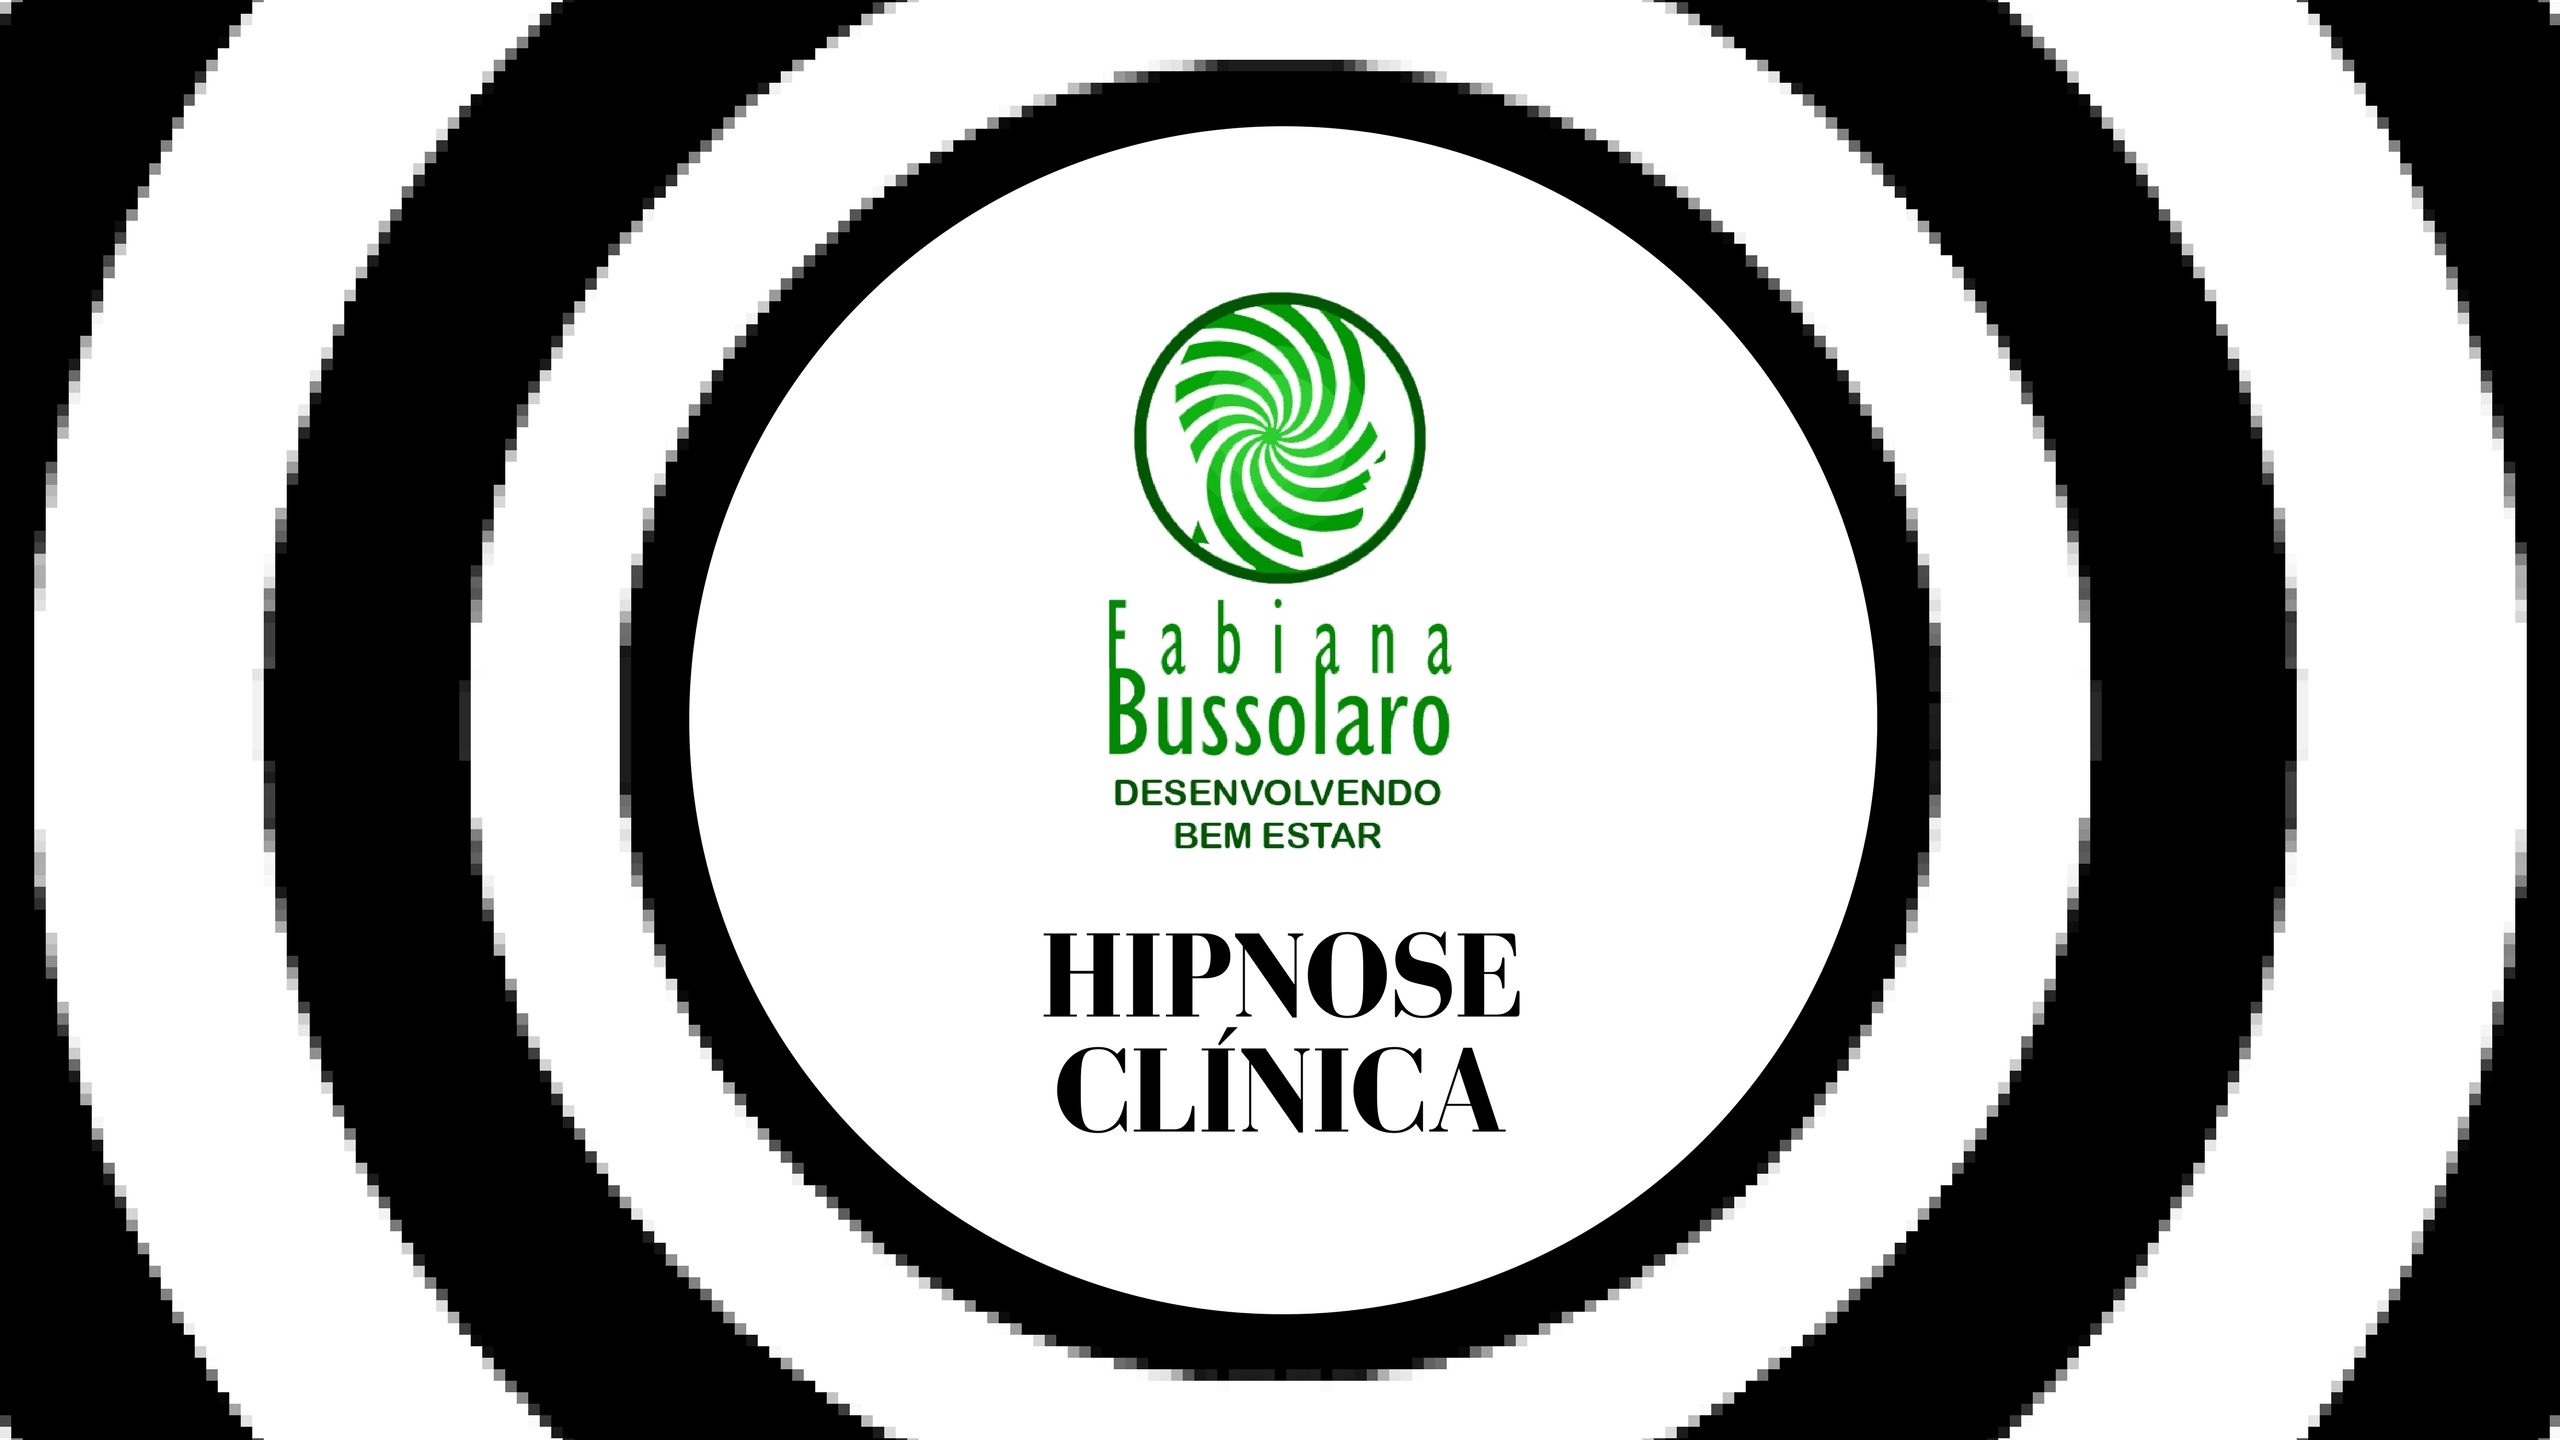 Hipnose Clínica - Interfaces dos Atendimentos